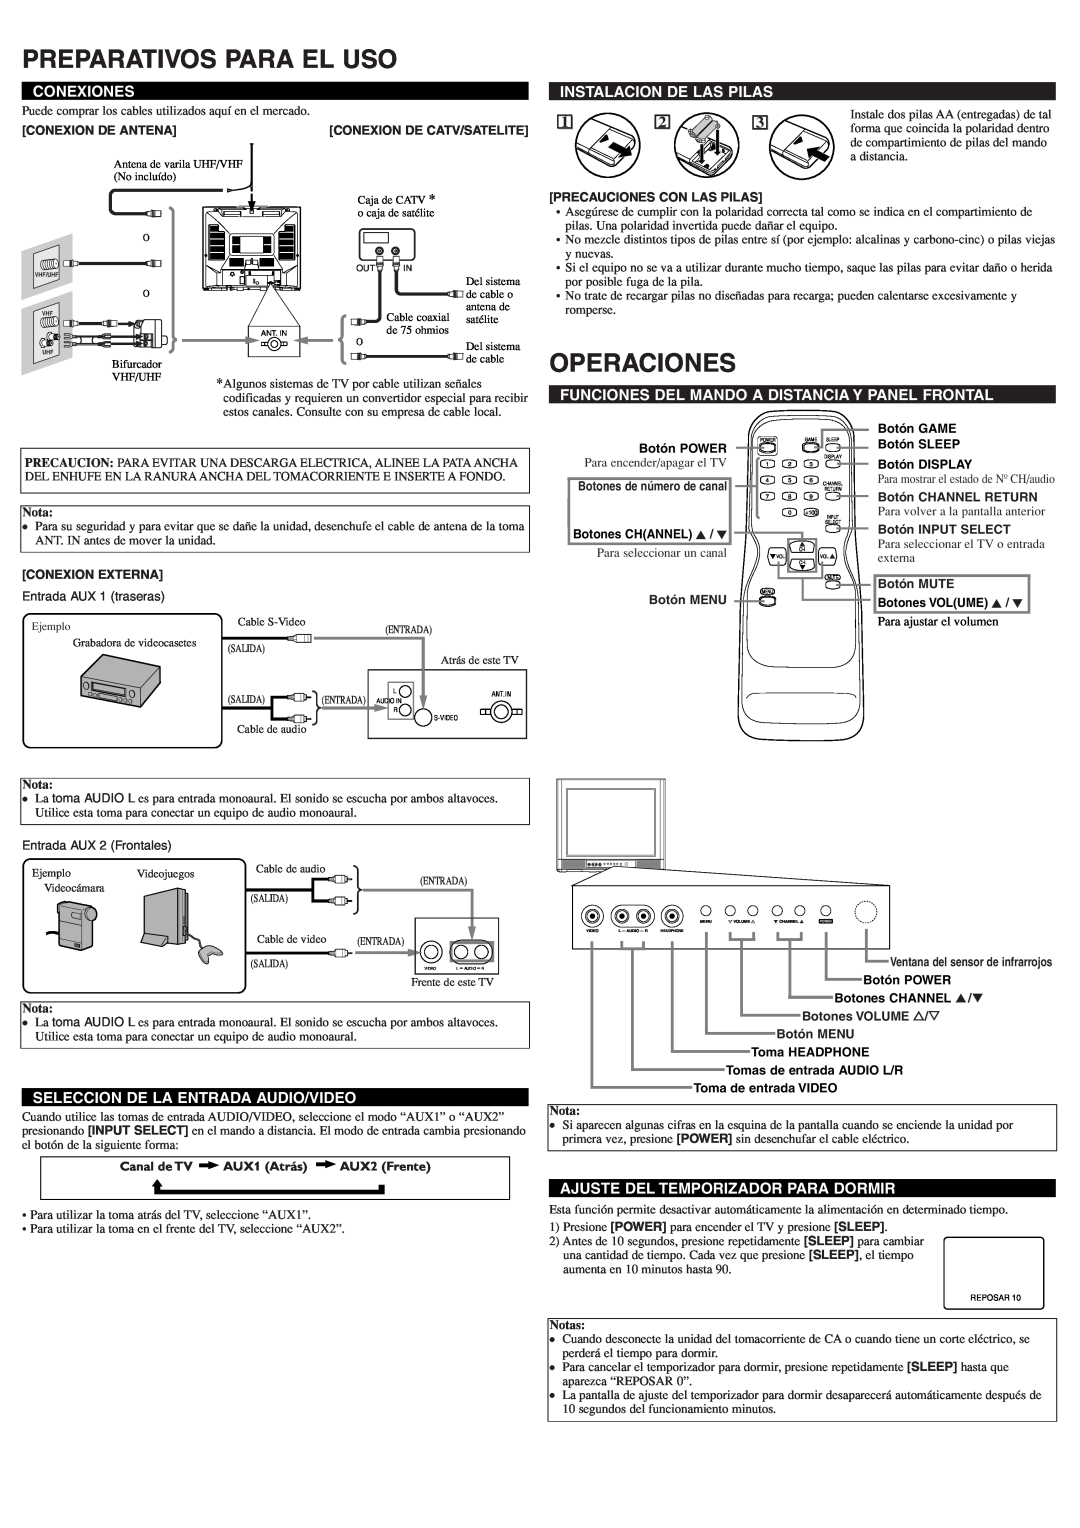 Emerson EWF2004A owner manual Preparativos Para El Uso, Operaciones, Conexiones, Instalacion De Las Pilas, Notas 